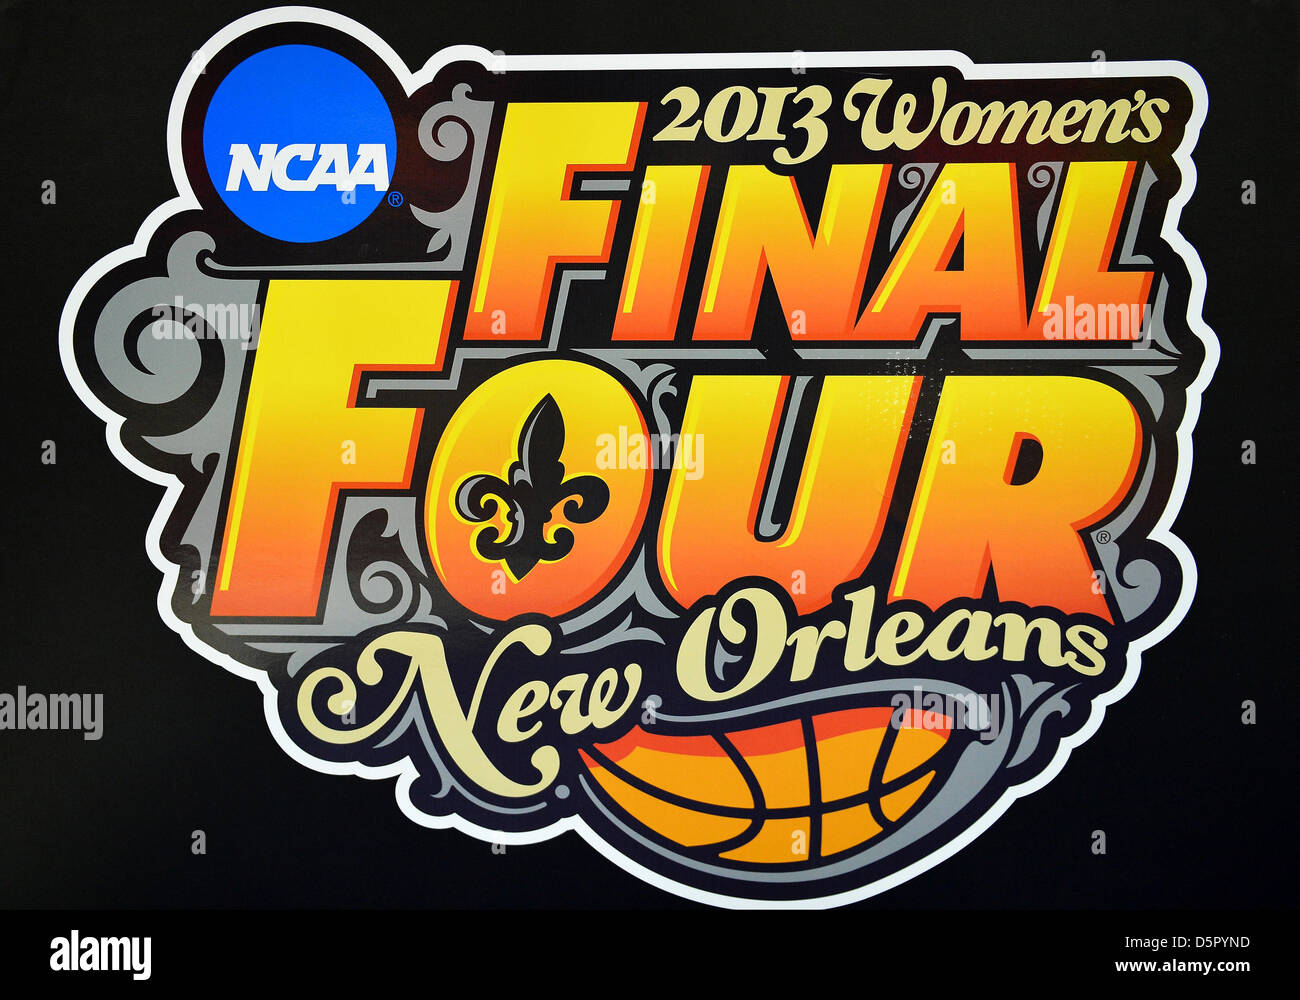 7 avril 2013 - New Orleans, LA, États-Unis - 07 avril 2013..Logo de quatre femmes finale championnat de basket-ball au New Orleans Arena à New Orleans, LA. Banque D'Images